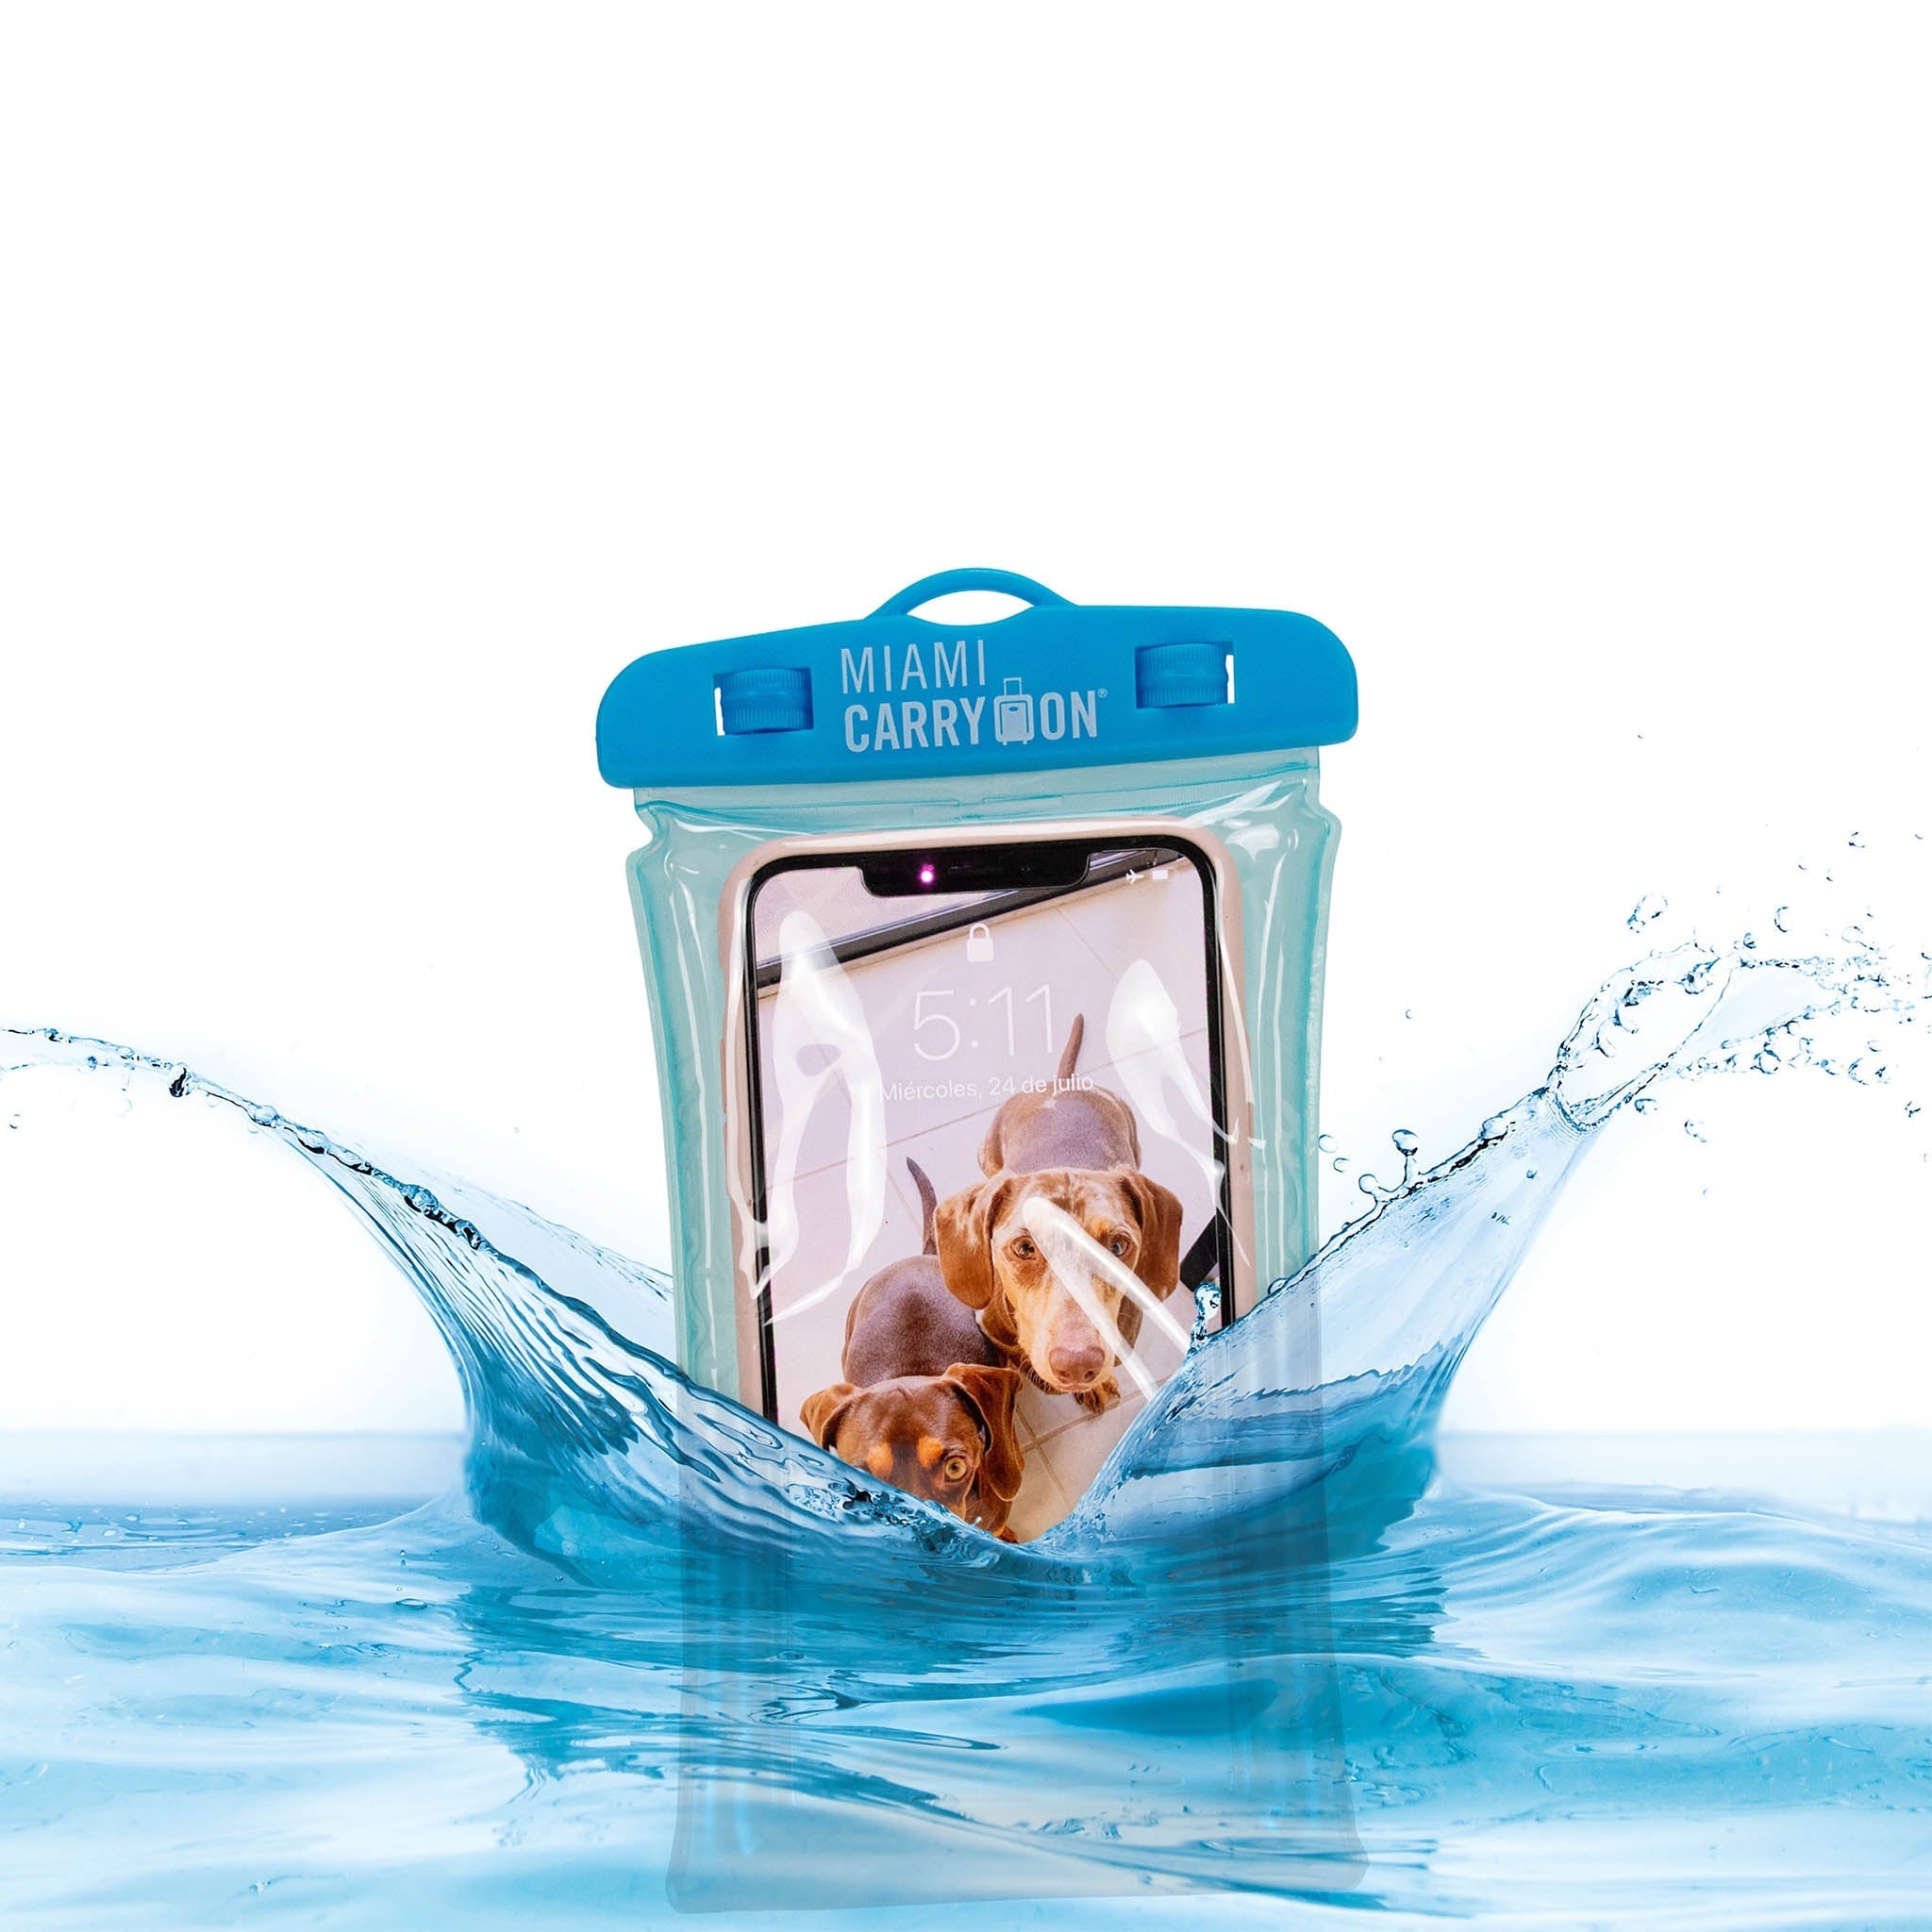 IPX8 Floating Waterproof Phone Bag